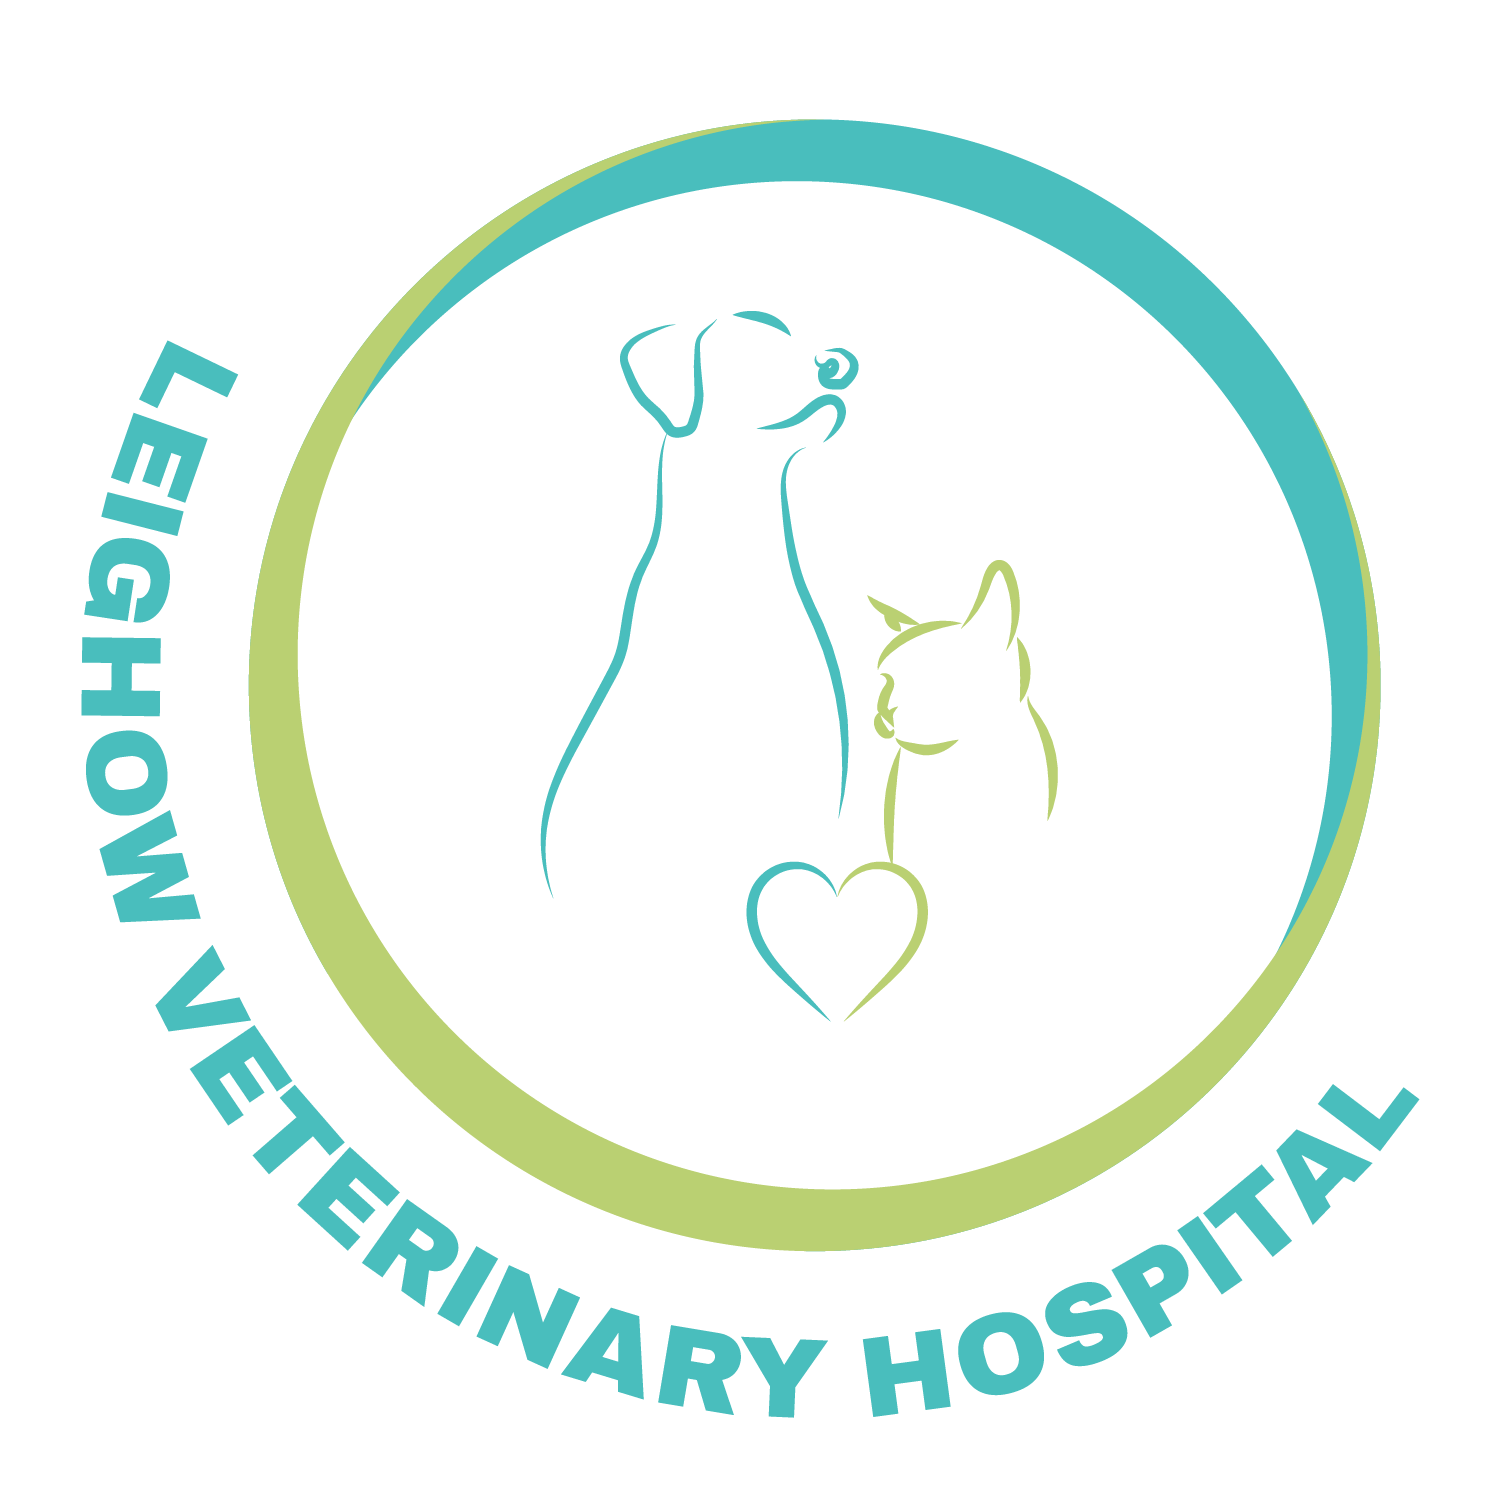 Leighow Veterinary Hospital